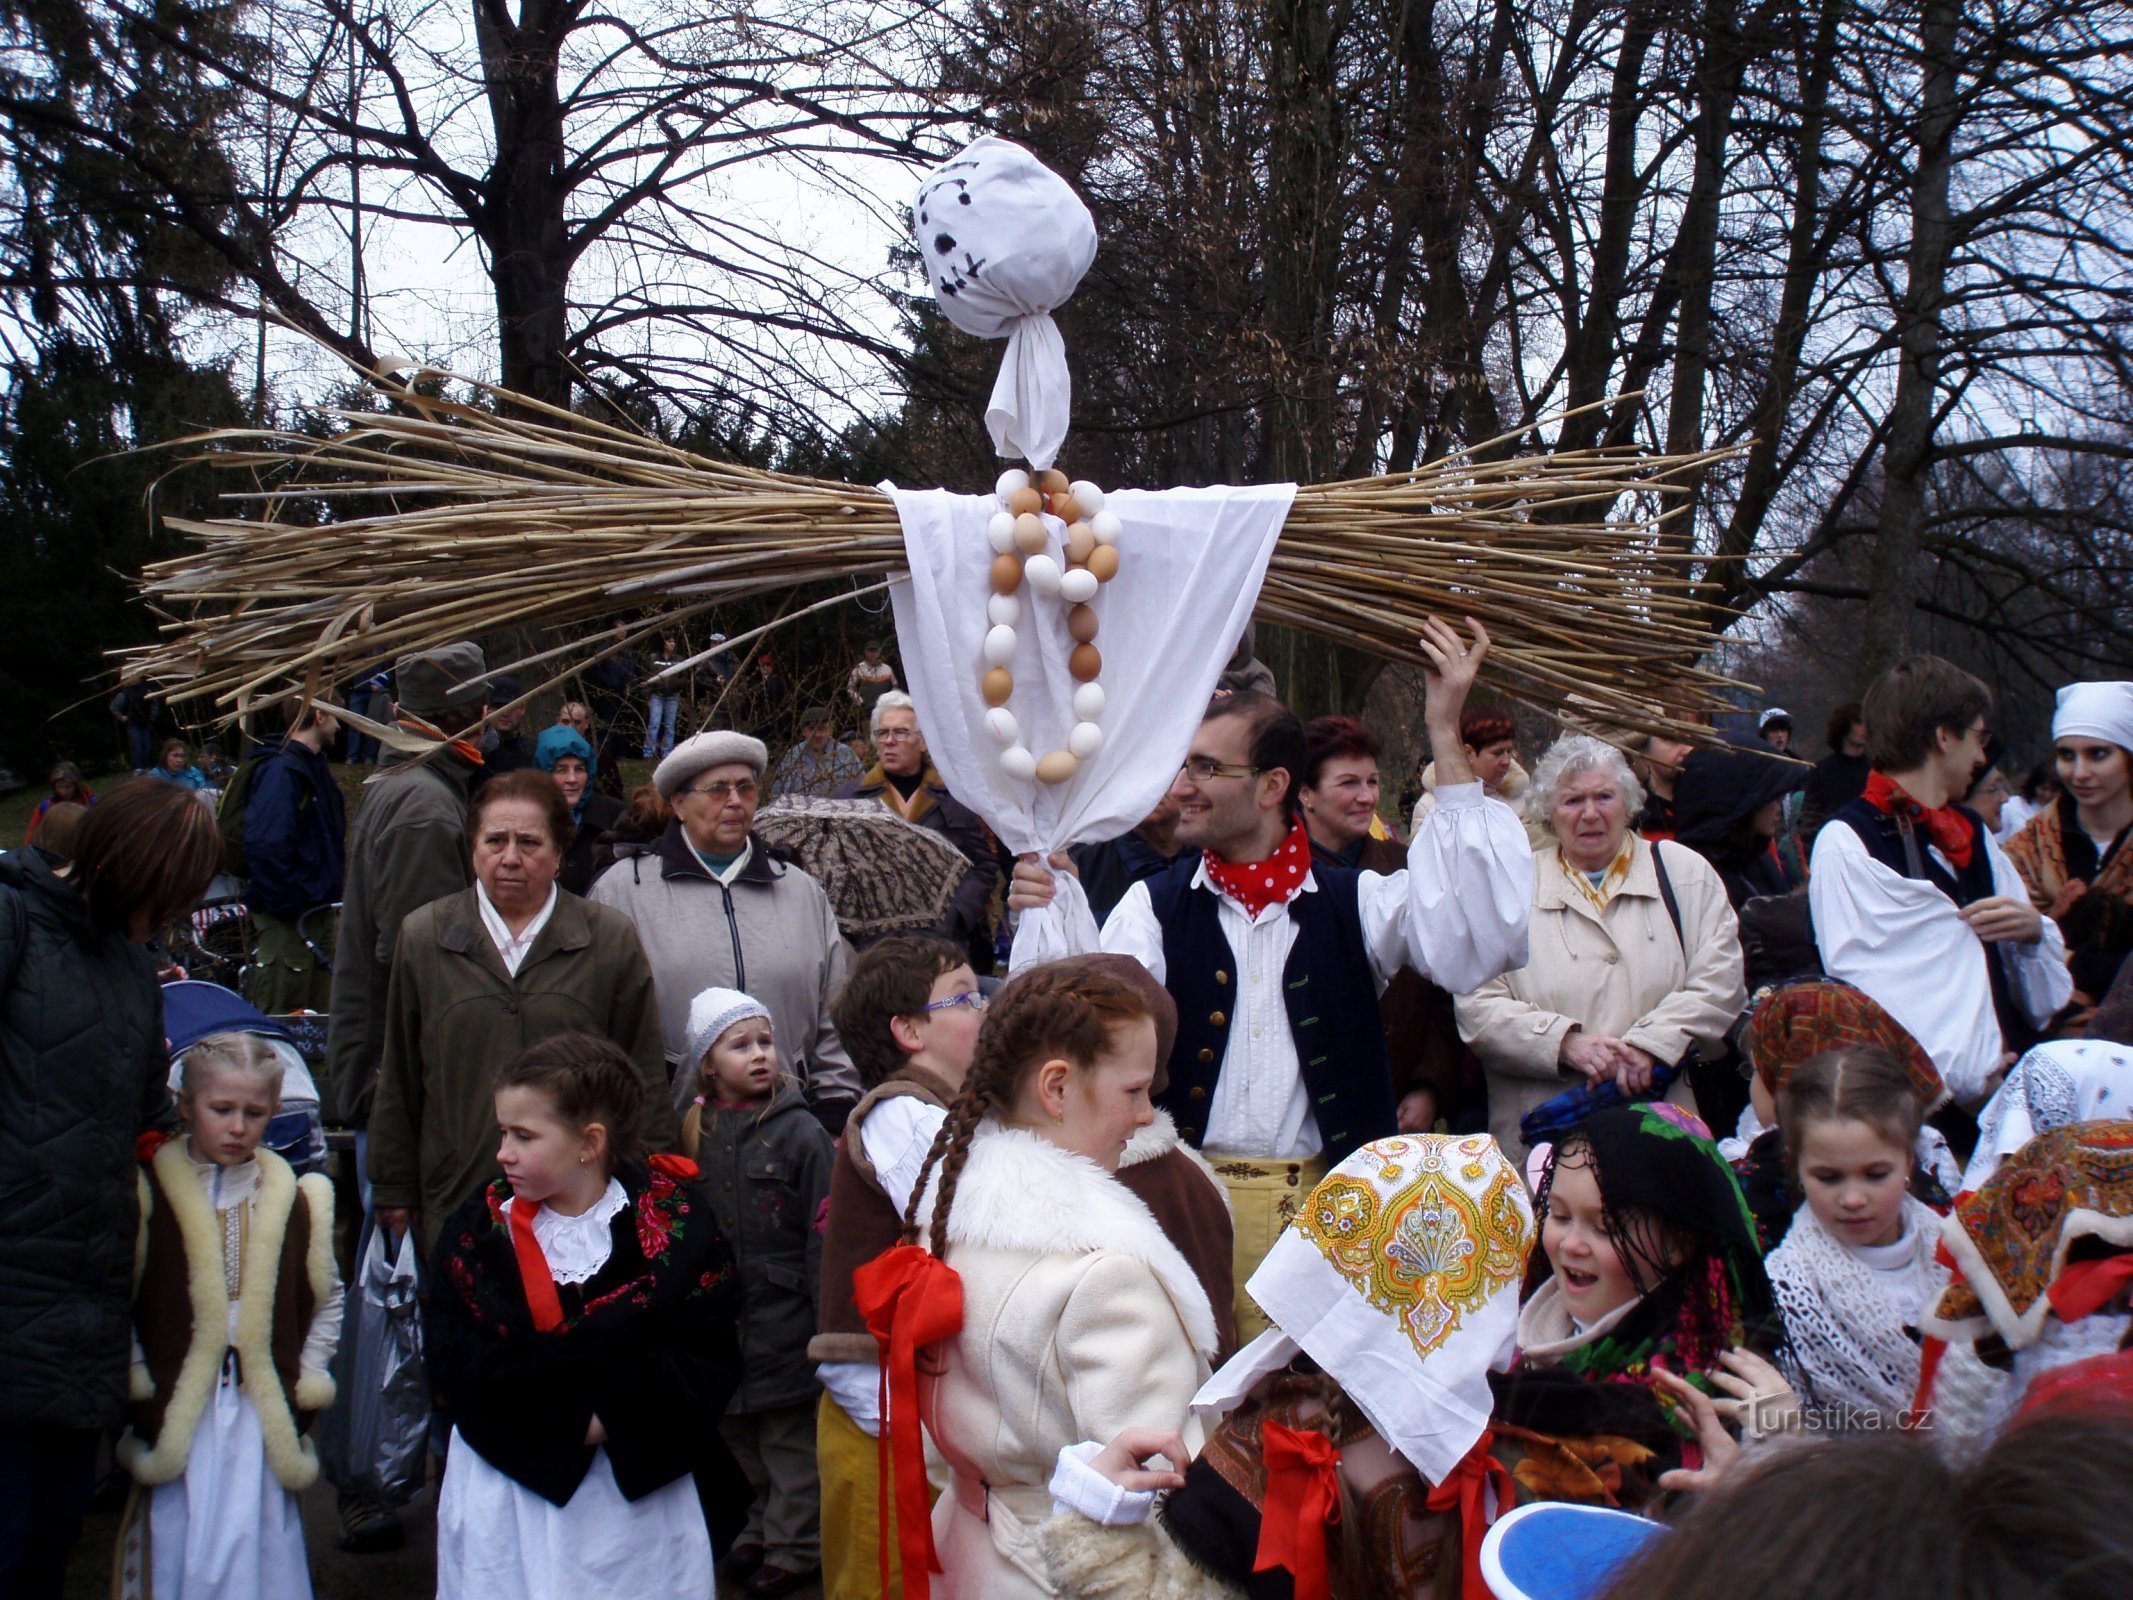 Thực hiện Smrtholka từ Hradec Králové (Hradec Králové, 29.3.2009/XNUMX/XNUMX)